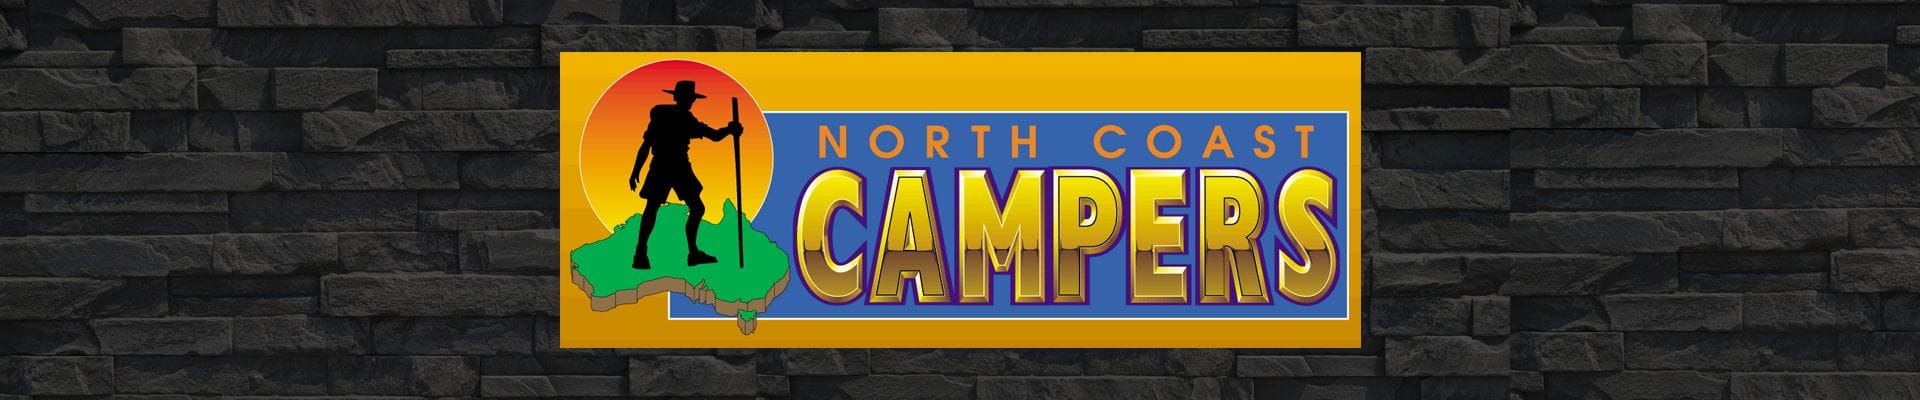 North Coast Campers